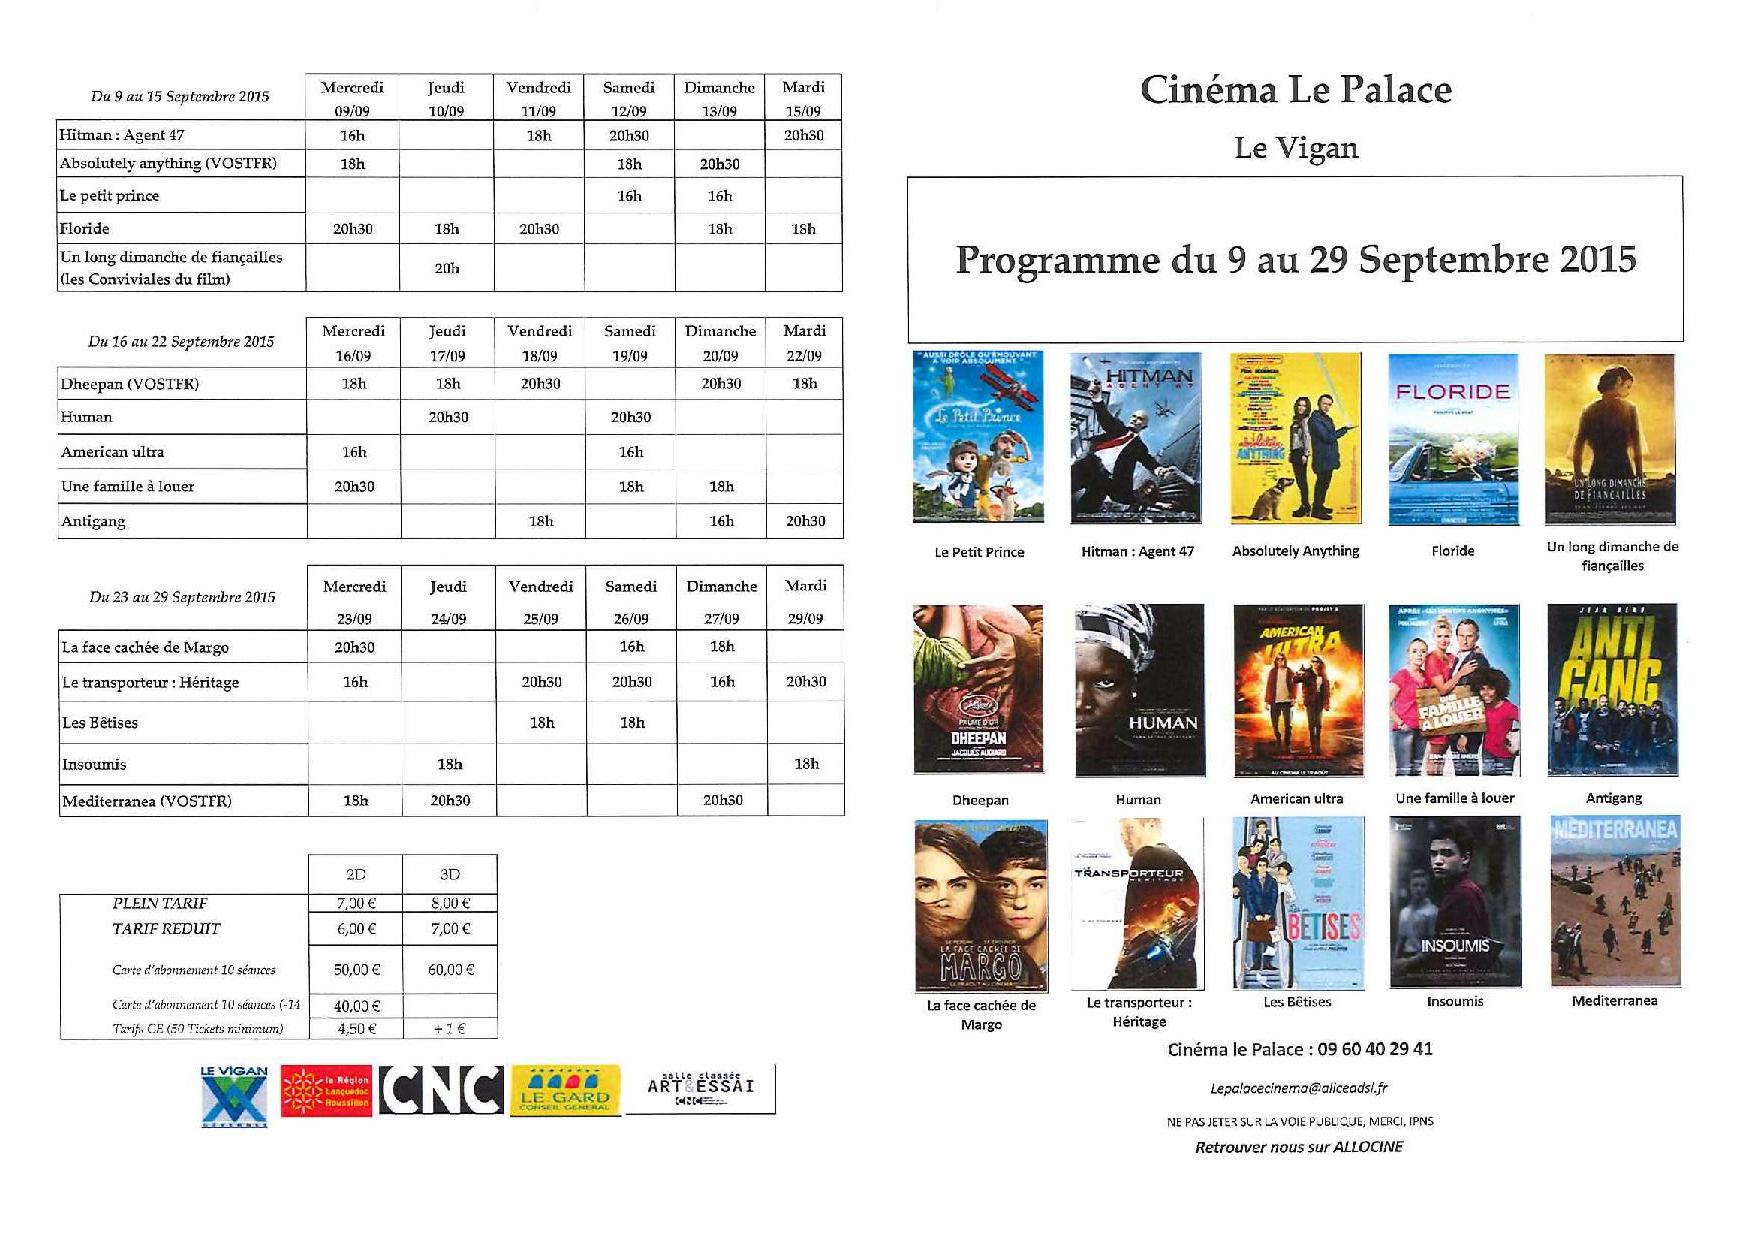 Programme du cinéma le Palace du 9 au 29 Septembre 2015